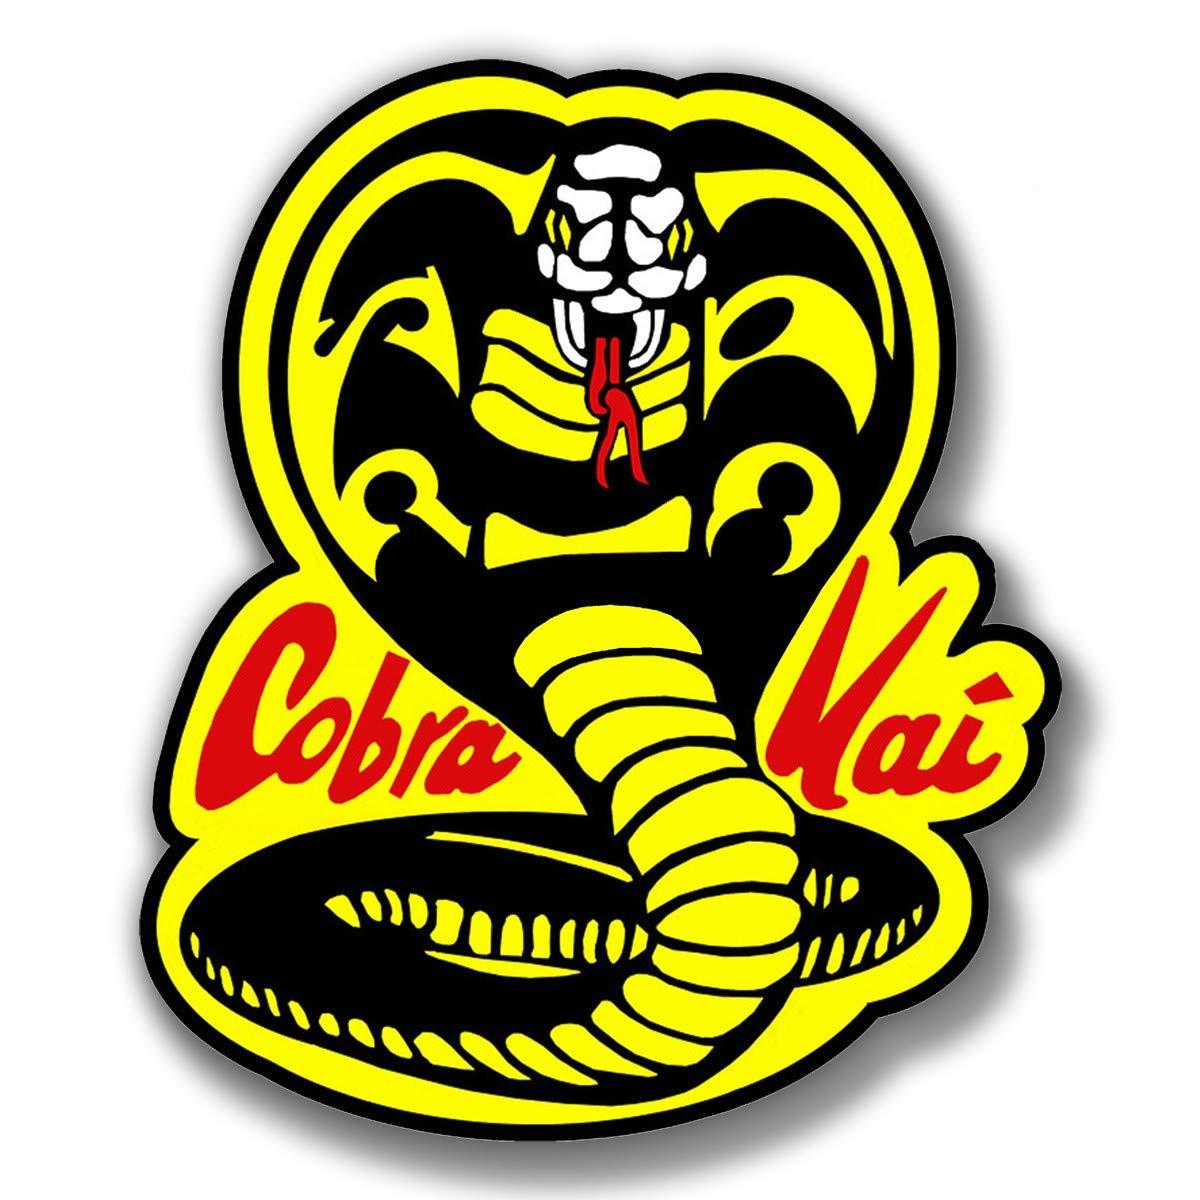 Kai Logo - Cobra Kai Logo Karate Kid Movie Vinyl Sticker Decal